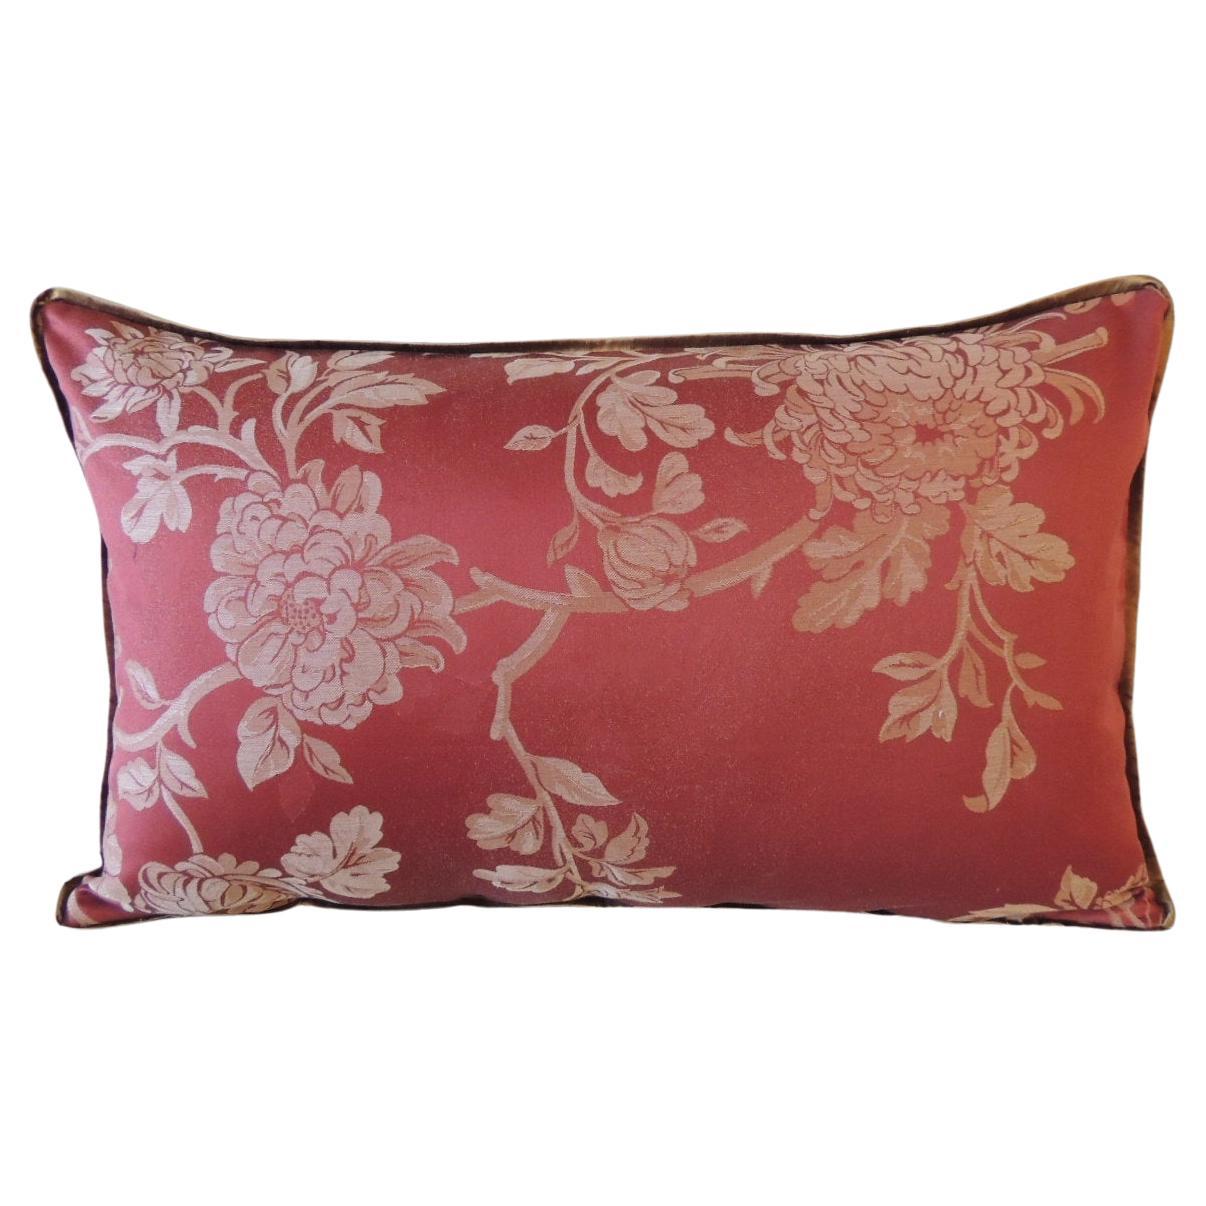 Red Satin Floral Modern Lumbar Decorative Pillow